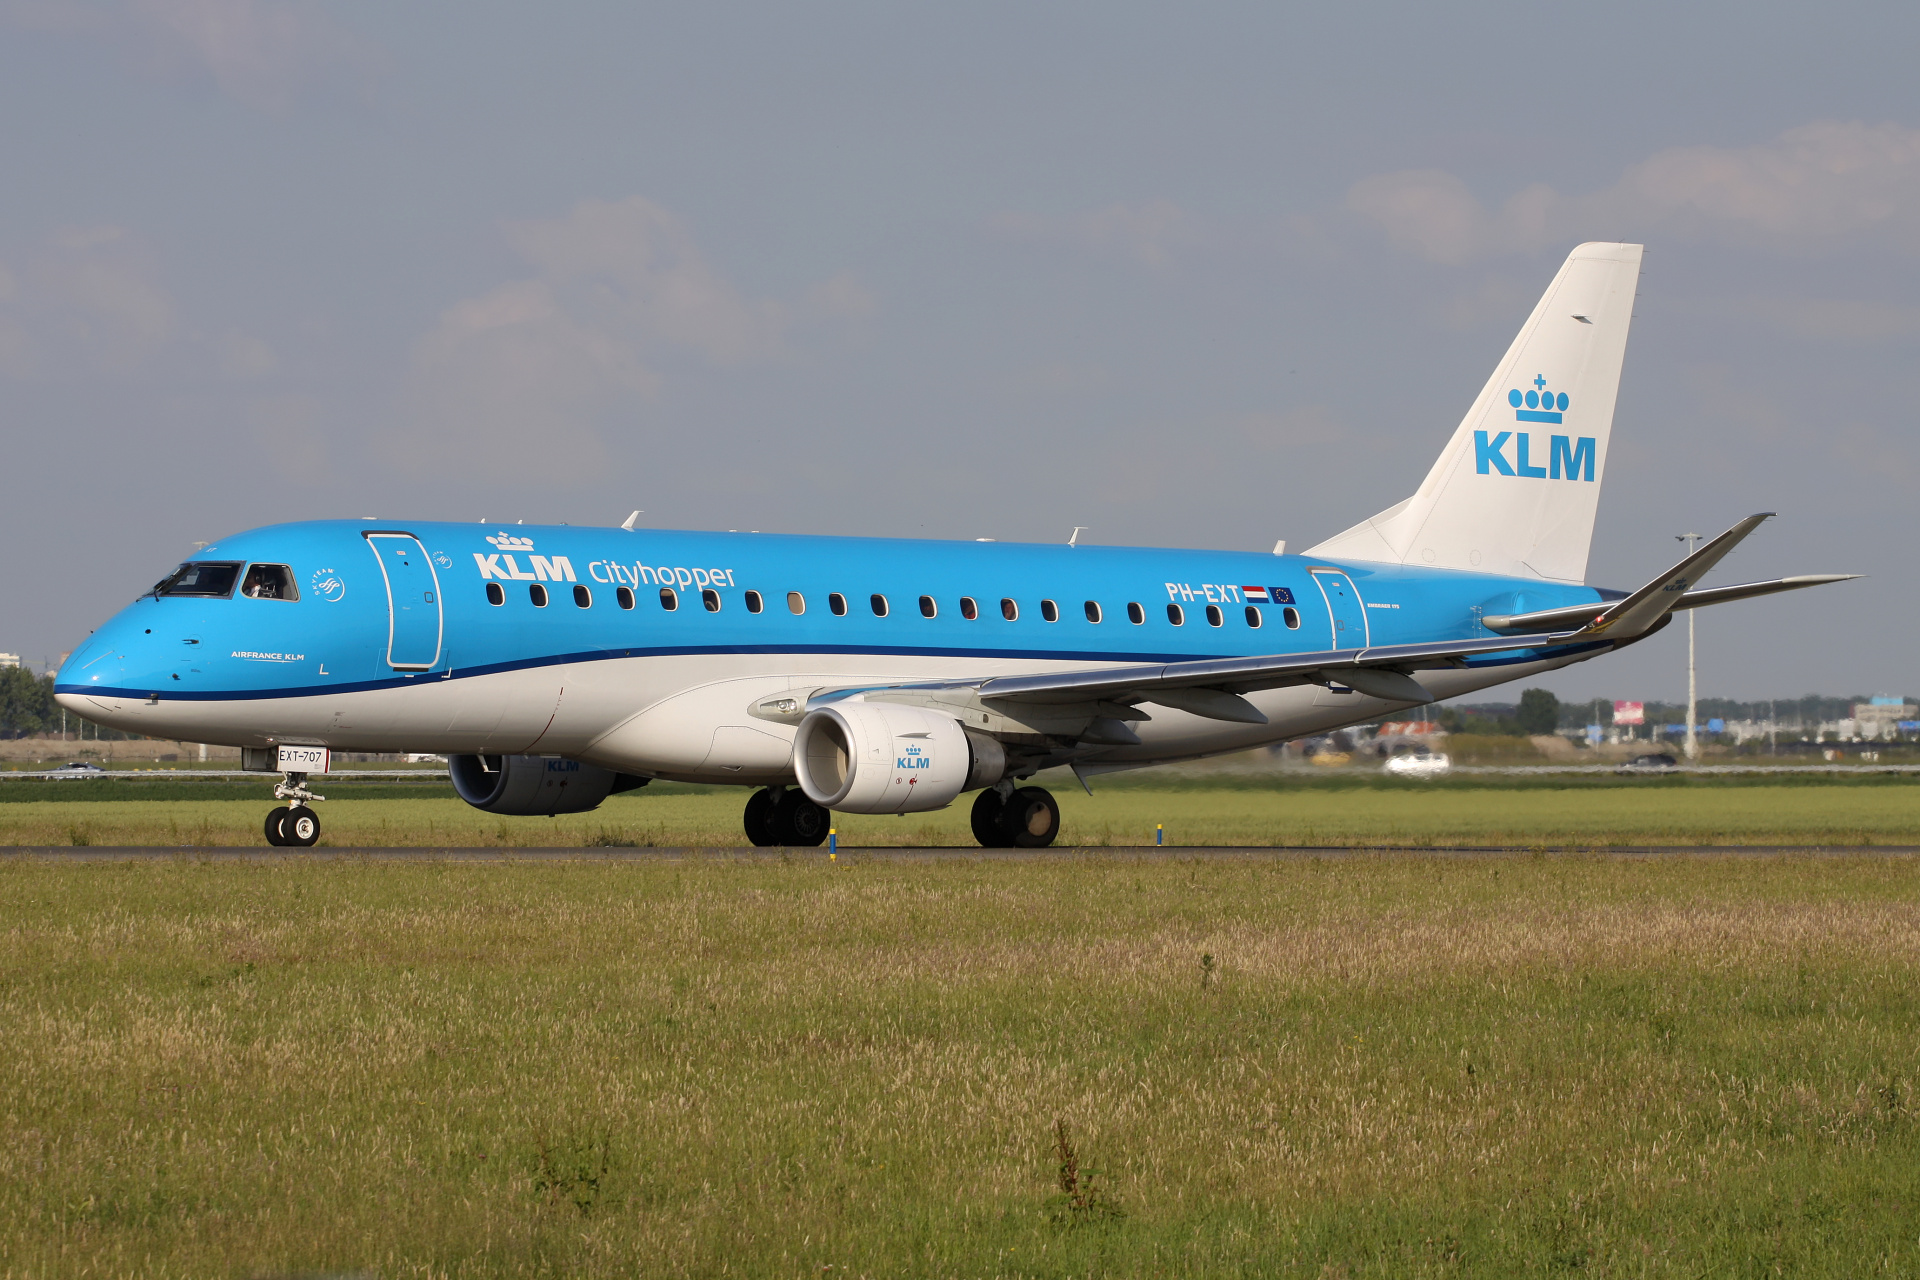 PH-EXT (Aircraft » Schiphol Spotting » Embraer E175 » KLM Cityhopper)